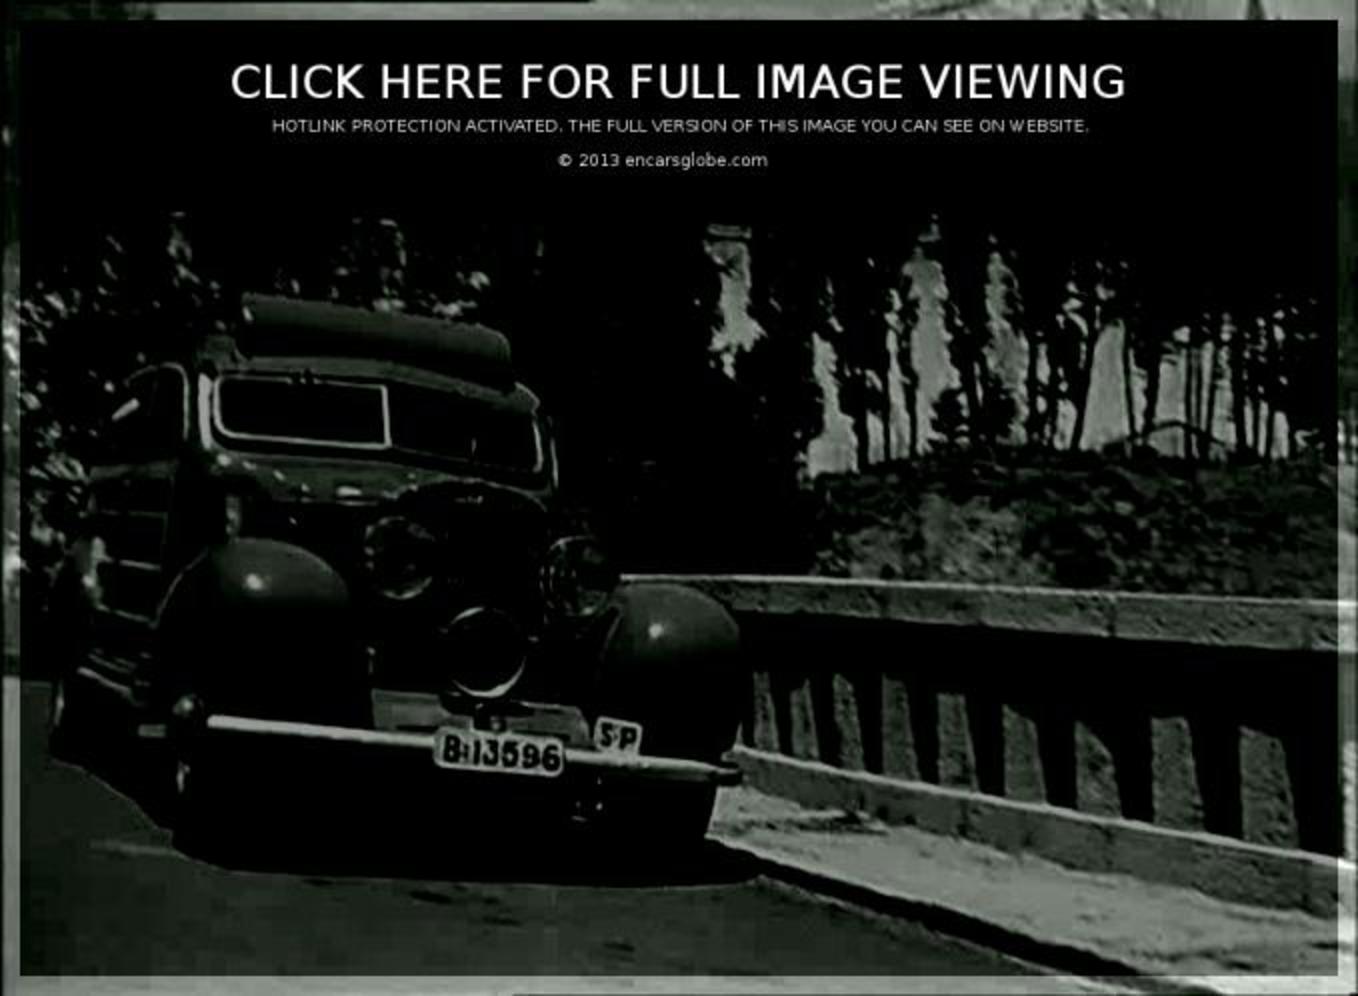 Galerie de photos de cabriolet Hispano Suiza J12 DIeteren: Photo #04...